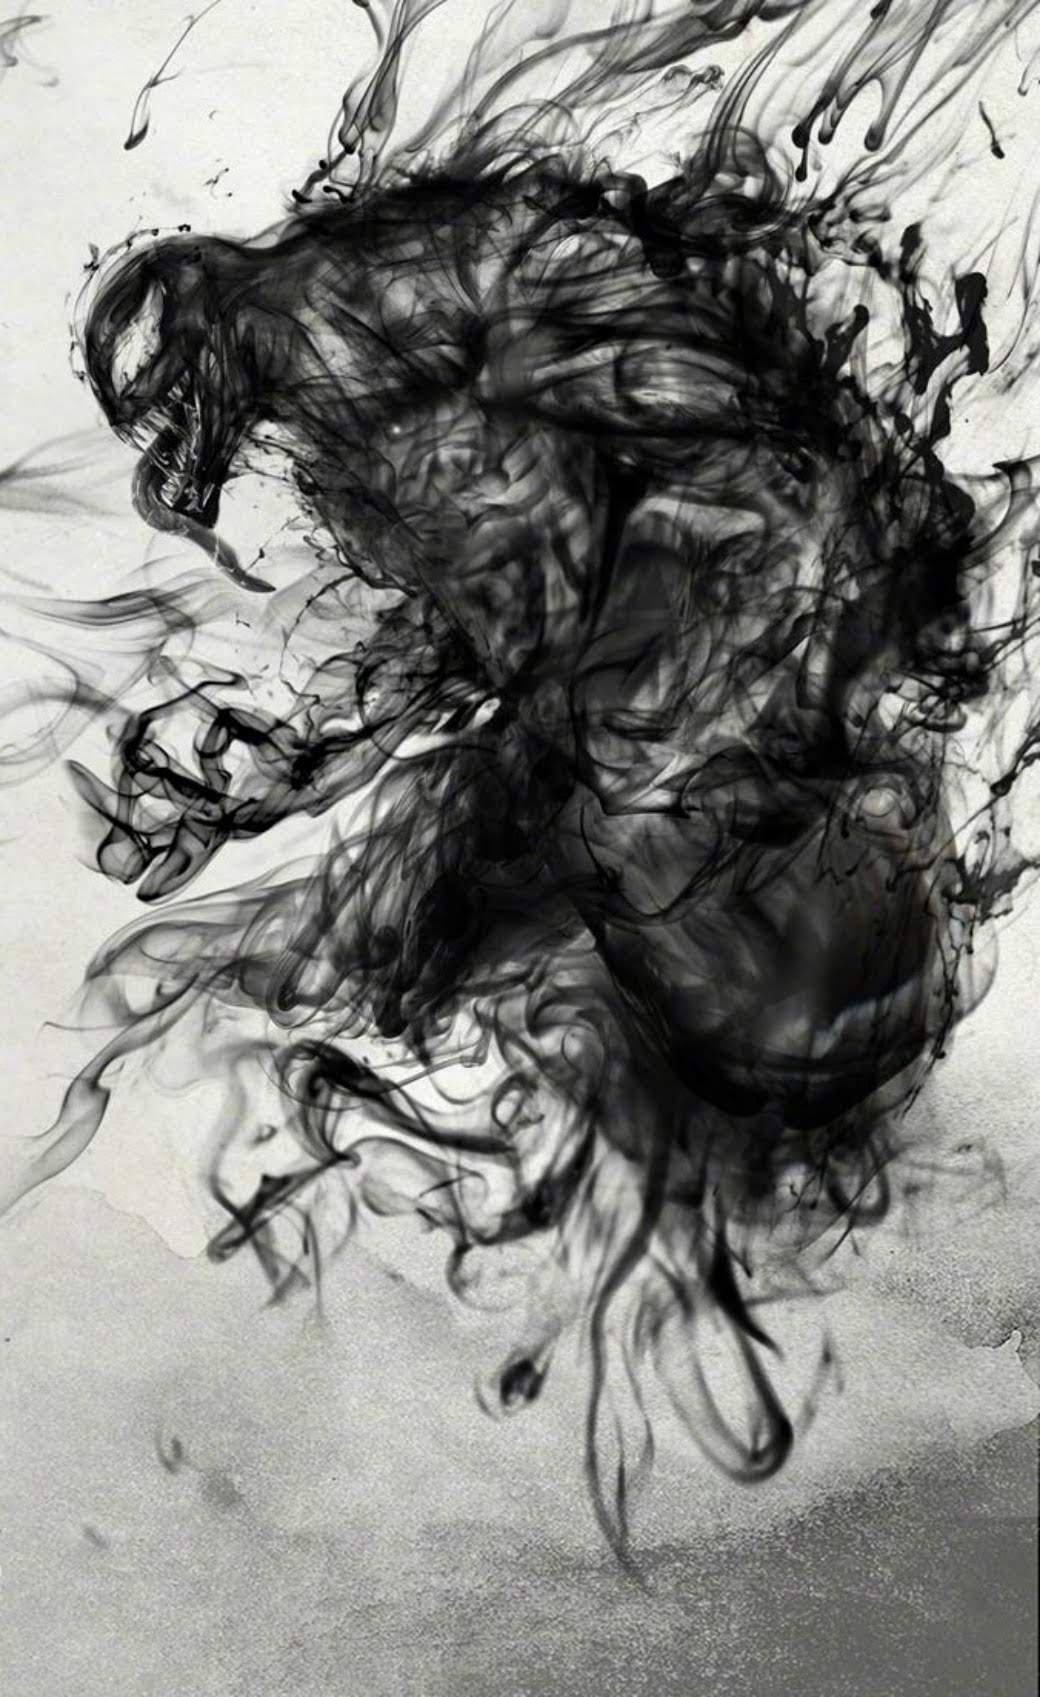 Venom Ink Wash Poster 墨の黒をエイリアン シンビオートの 毒液 に見立てた中華版 ヴェノム の水墨画のポスター Cia Extra